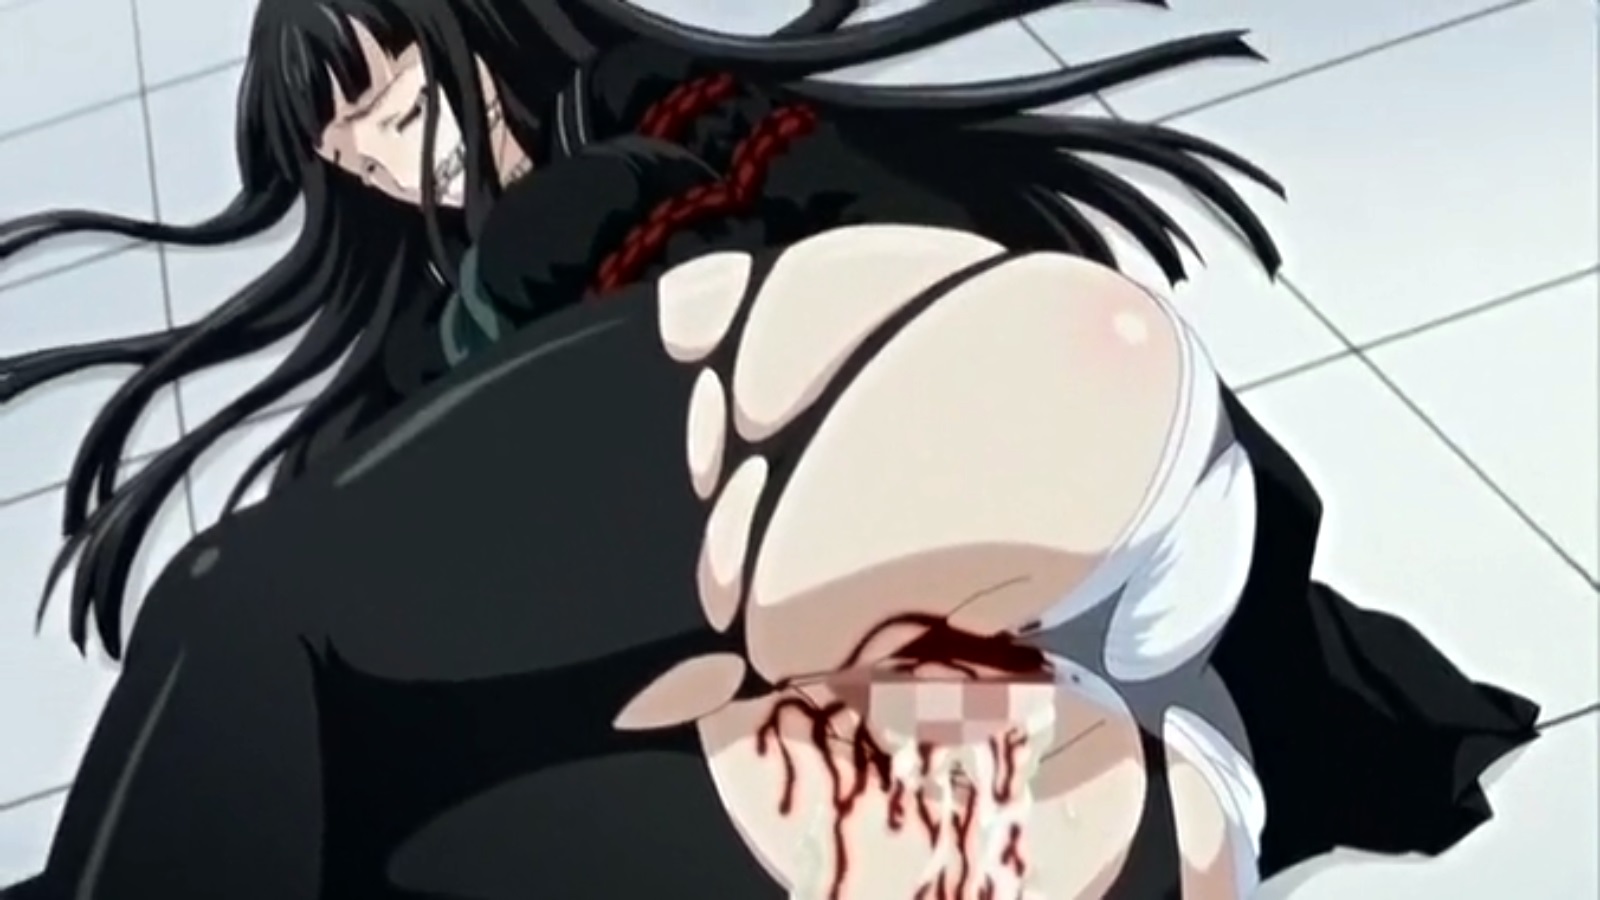 brutal hentai movie rape blood ache death hentaimovie tv